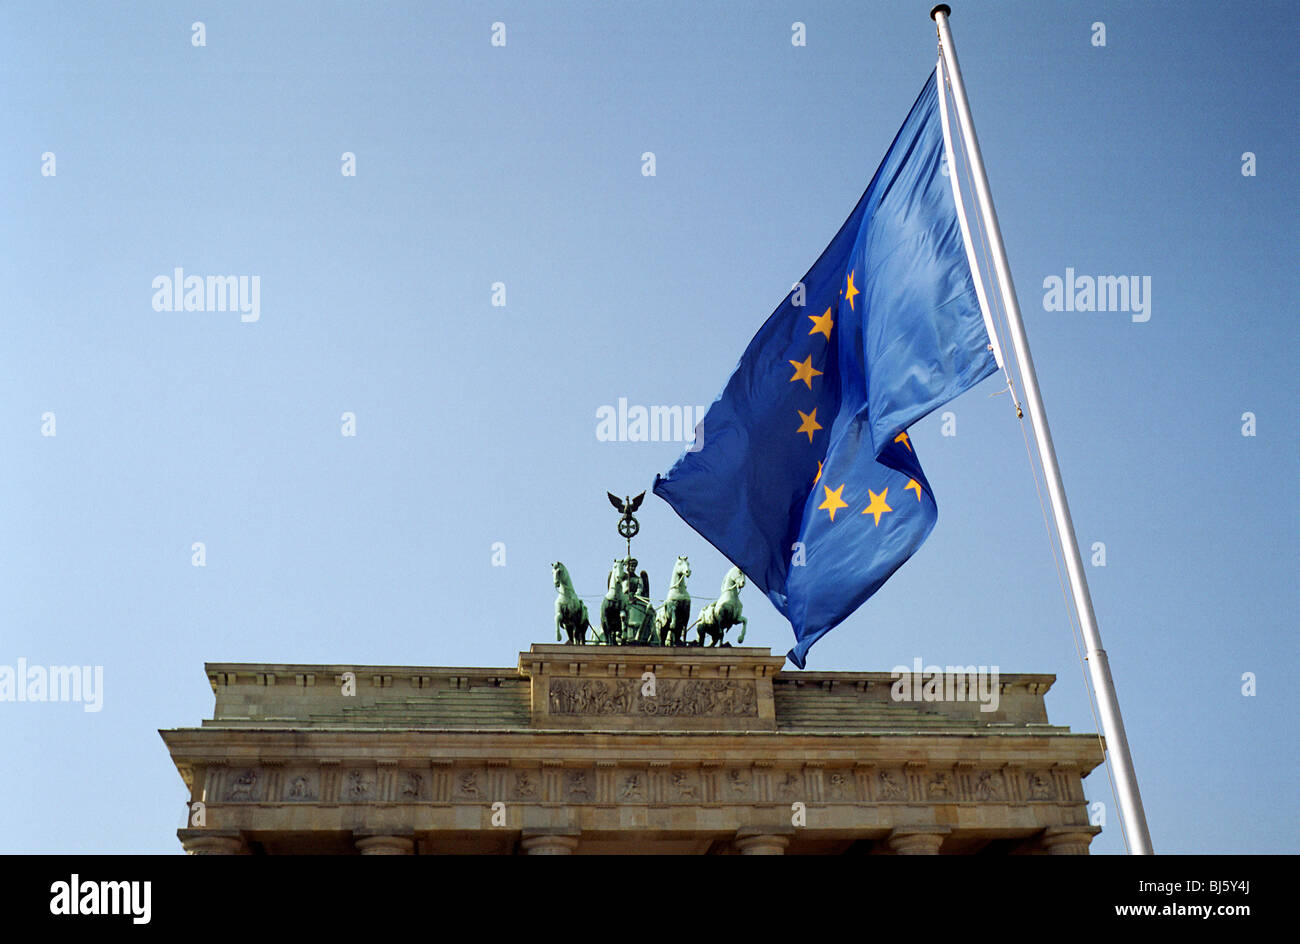 Download Flag of Brandenburg, 40+ Shapes